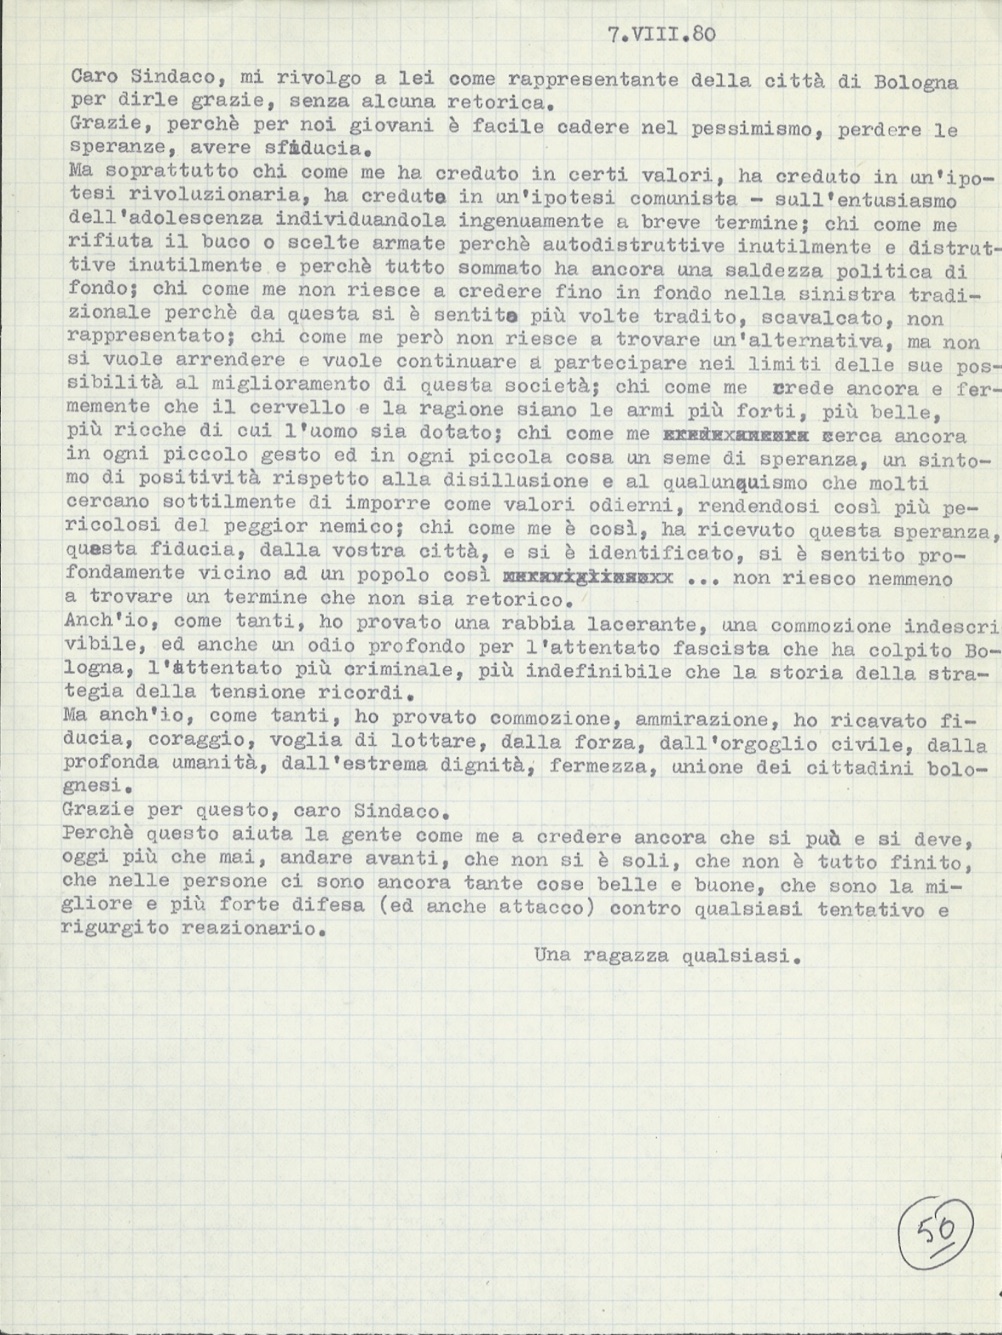 Archivio storico del Comune di Bologna, Gabinetto del sindaco, Strage alla stazione, Lettera di una ragazza qualsiasi, 7 agosto 1980.